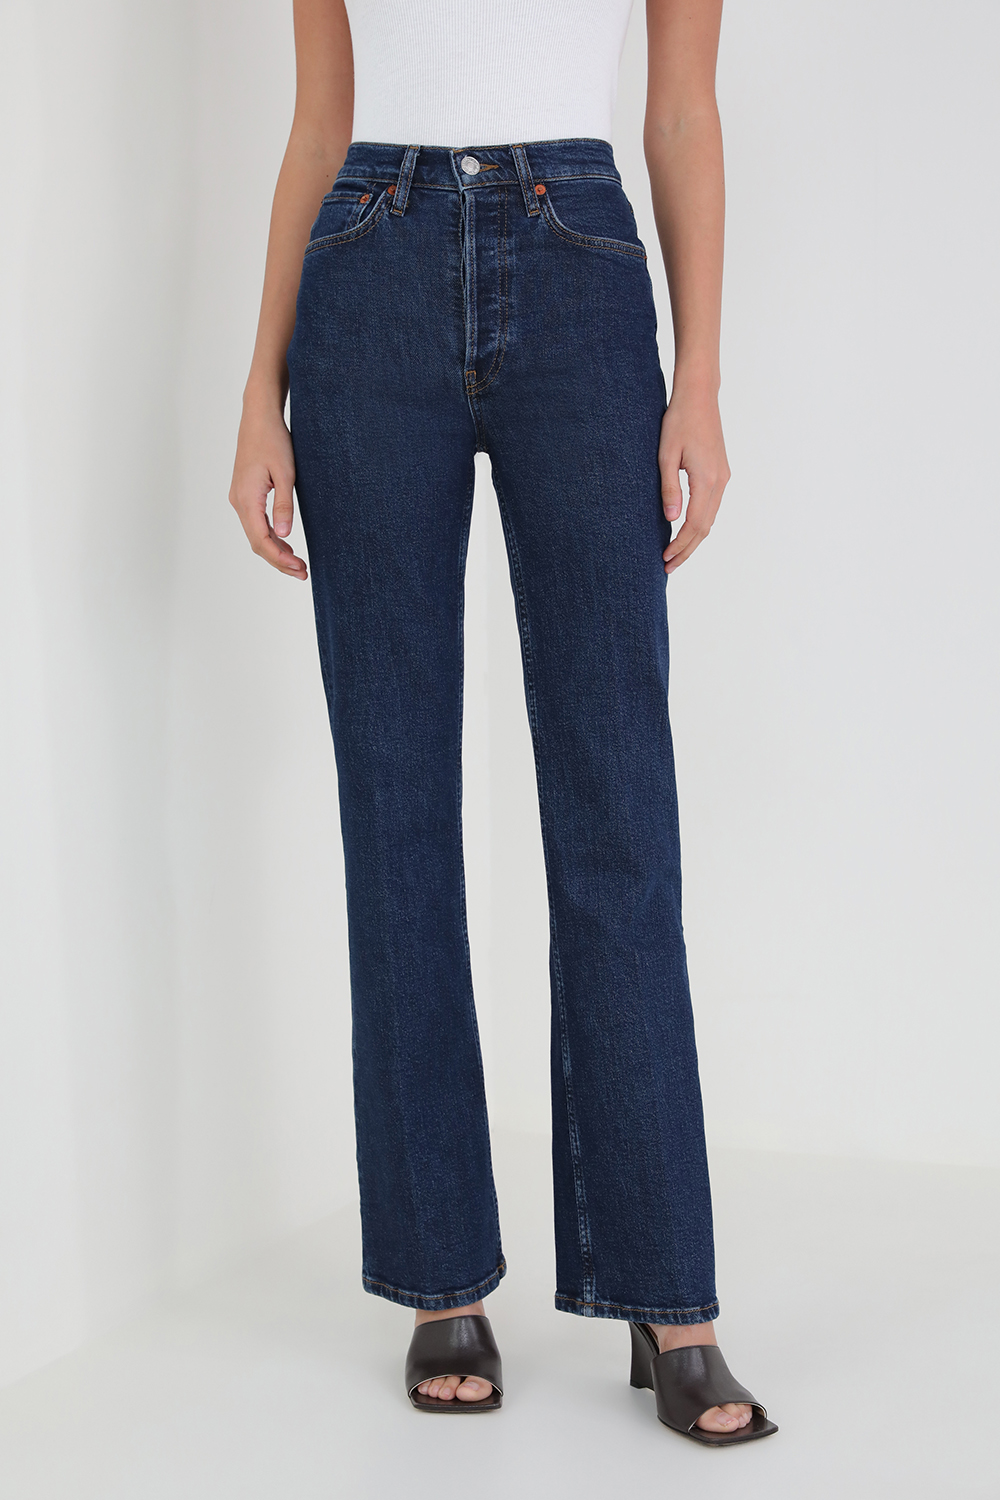 מכנסי ג'ינס שנות ה-70 בשטיפה כחולה RE/DONE